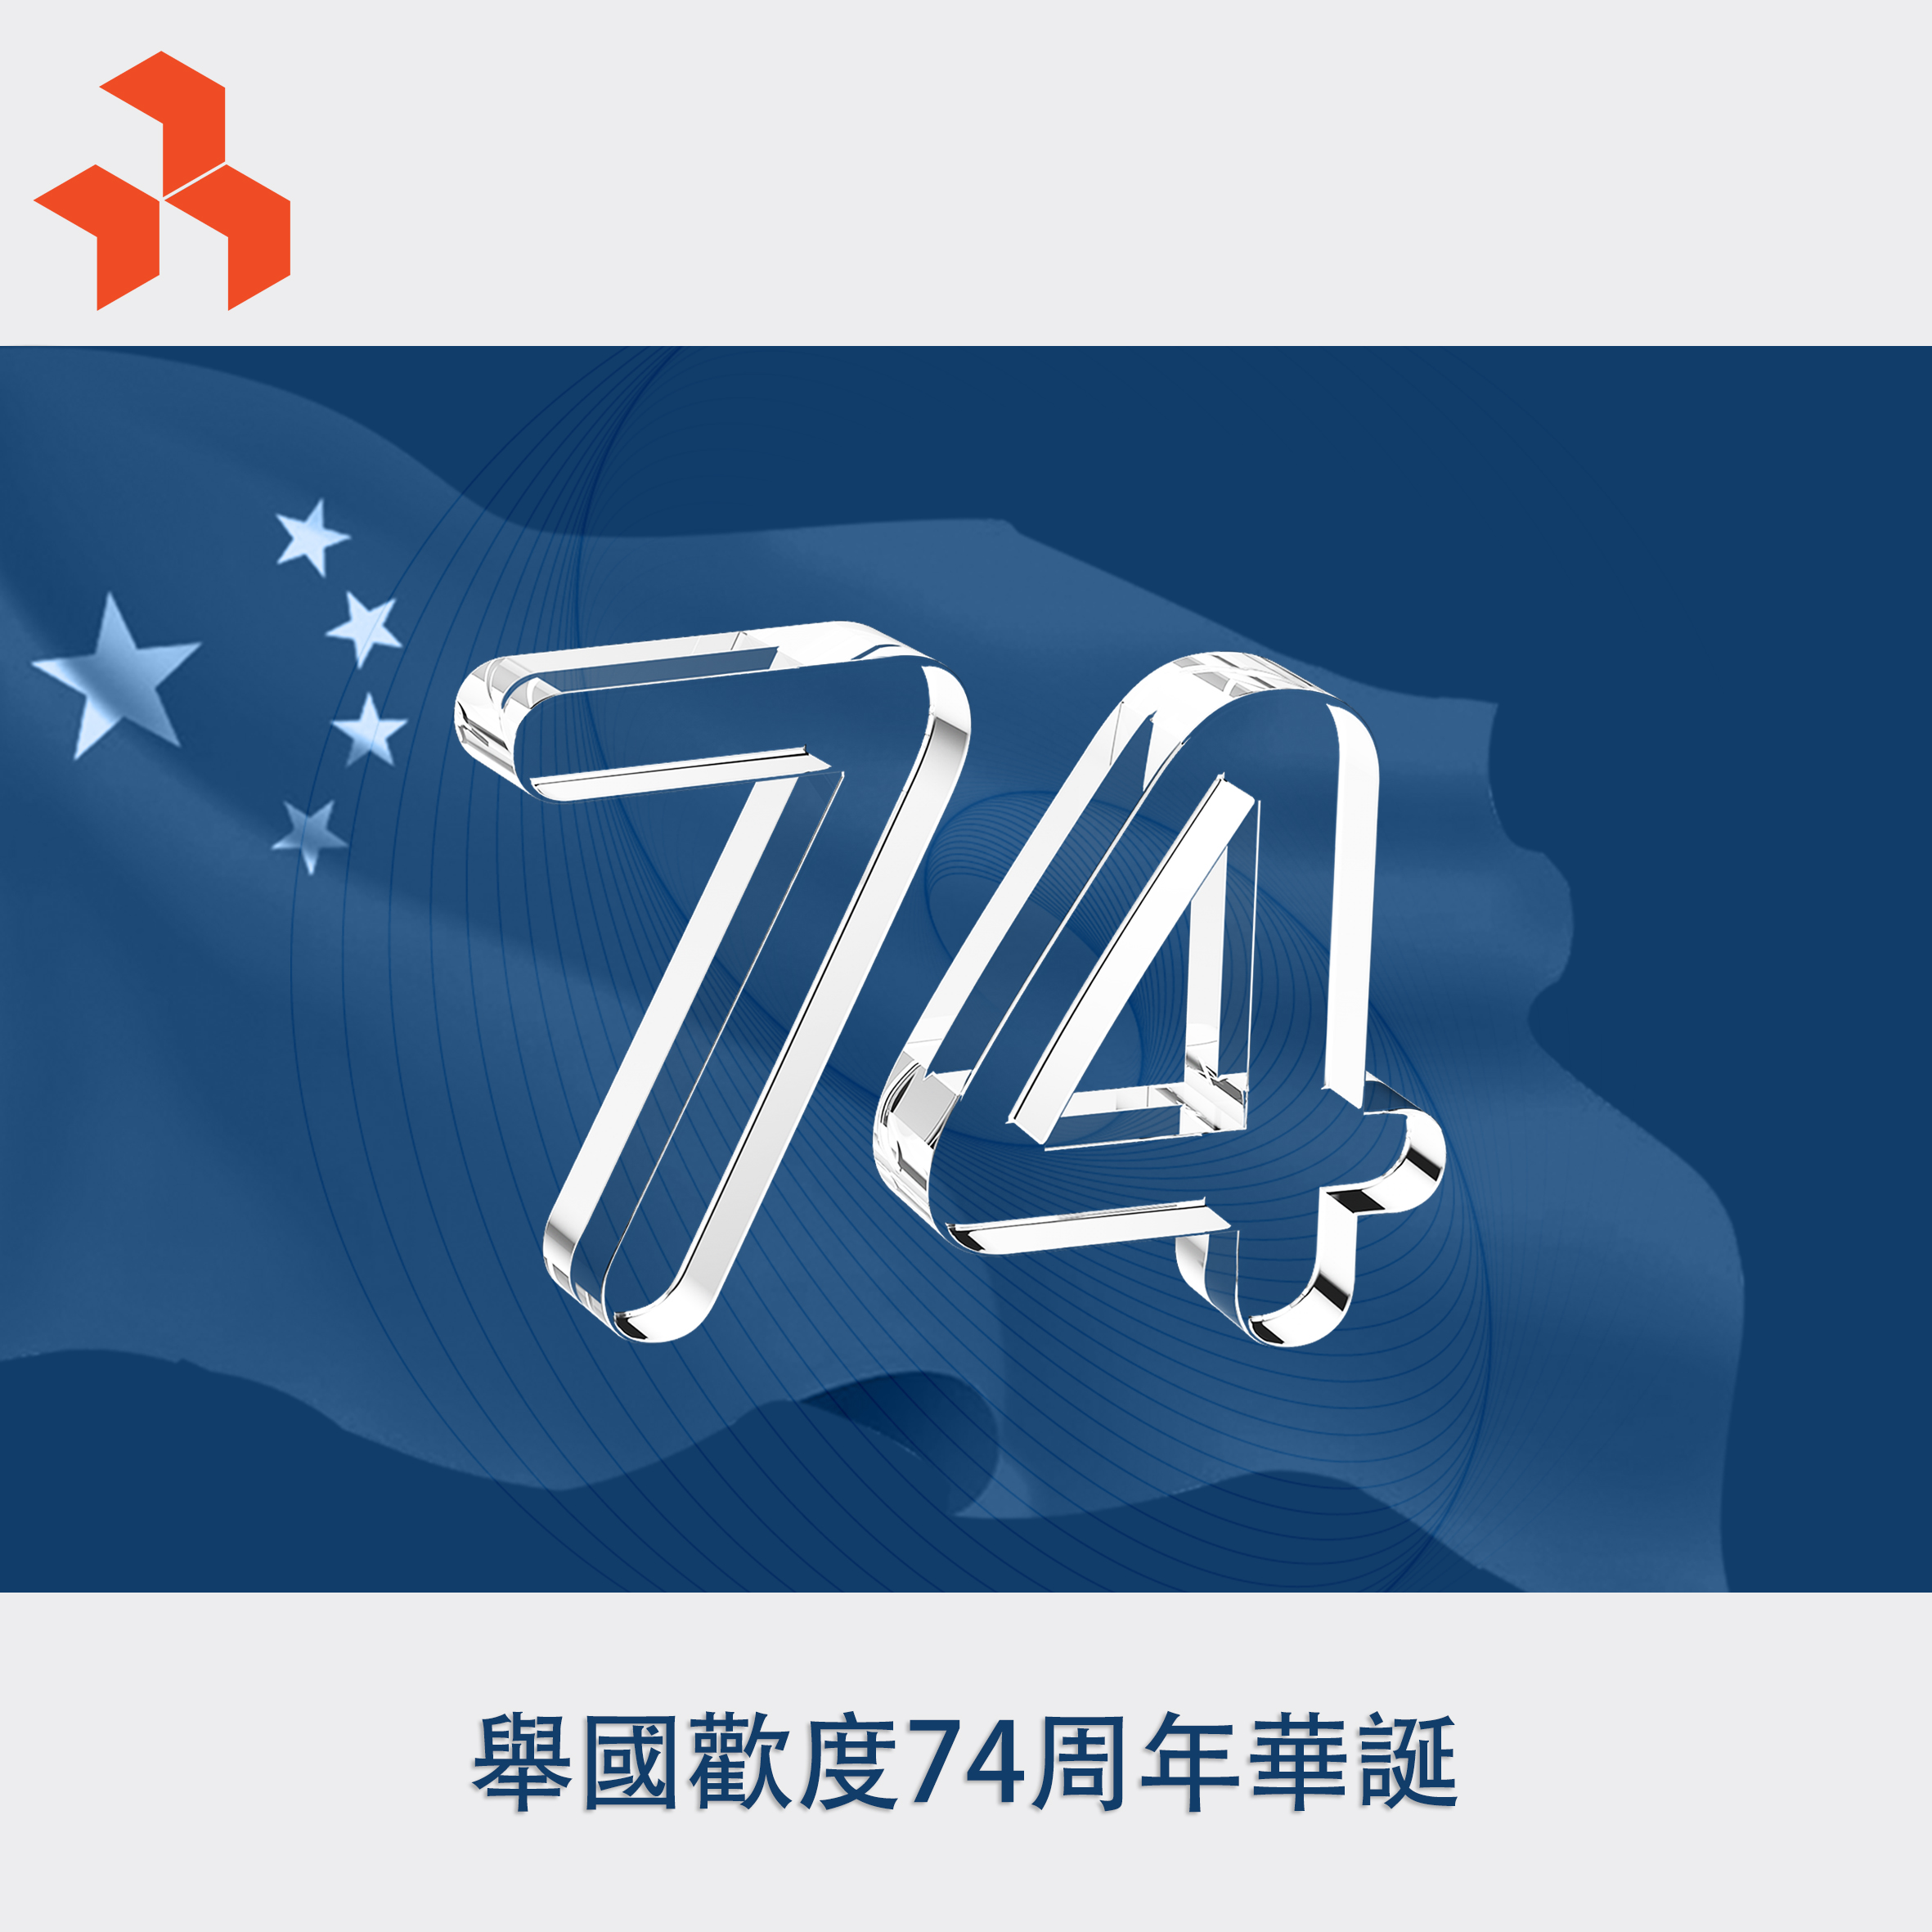 国庆new logo